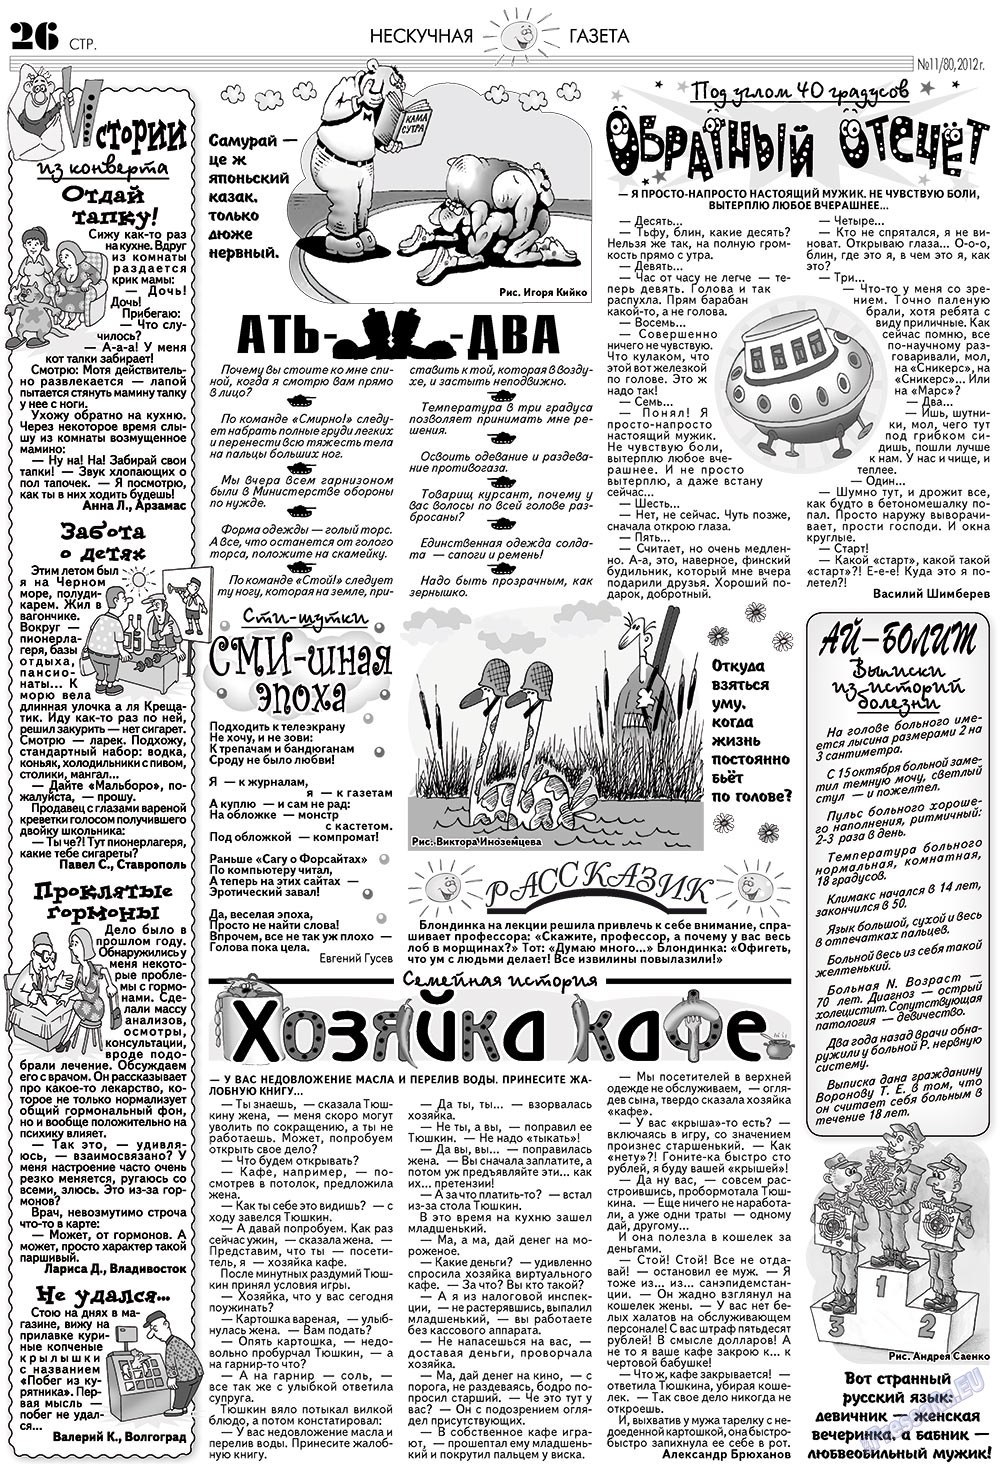 Нескучная газета (журнал). 2012 год, номер 11, стр. 26